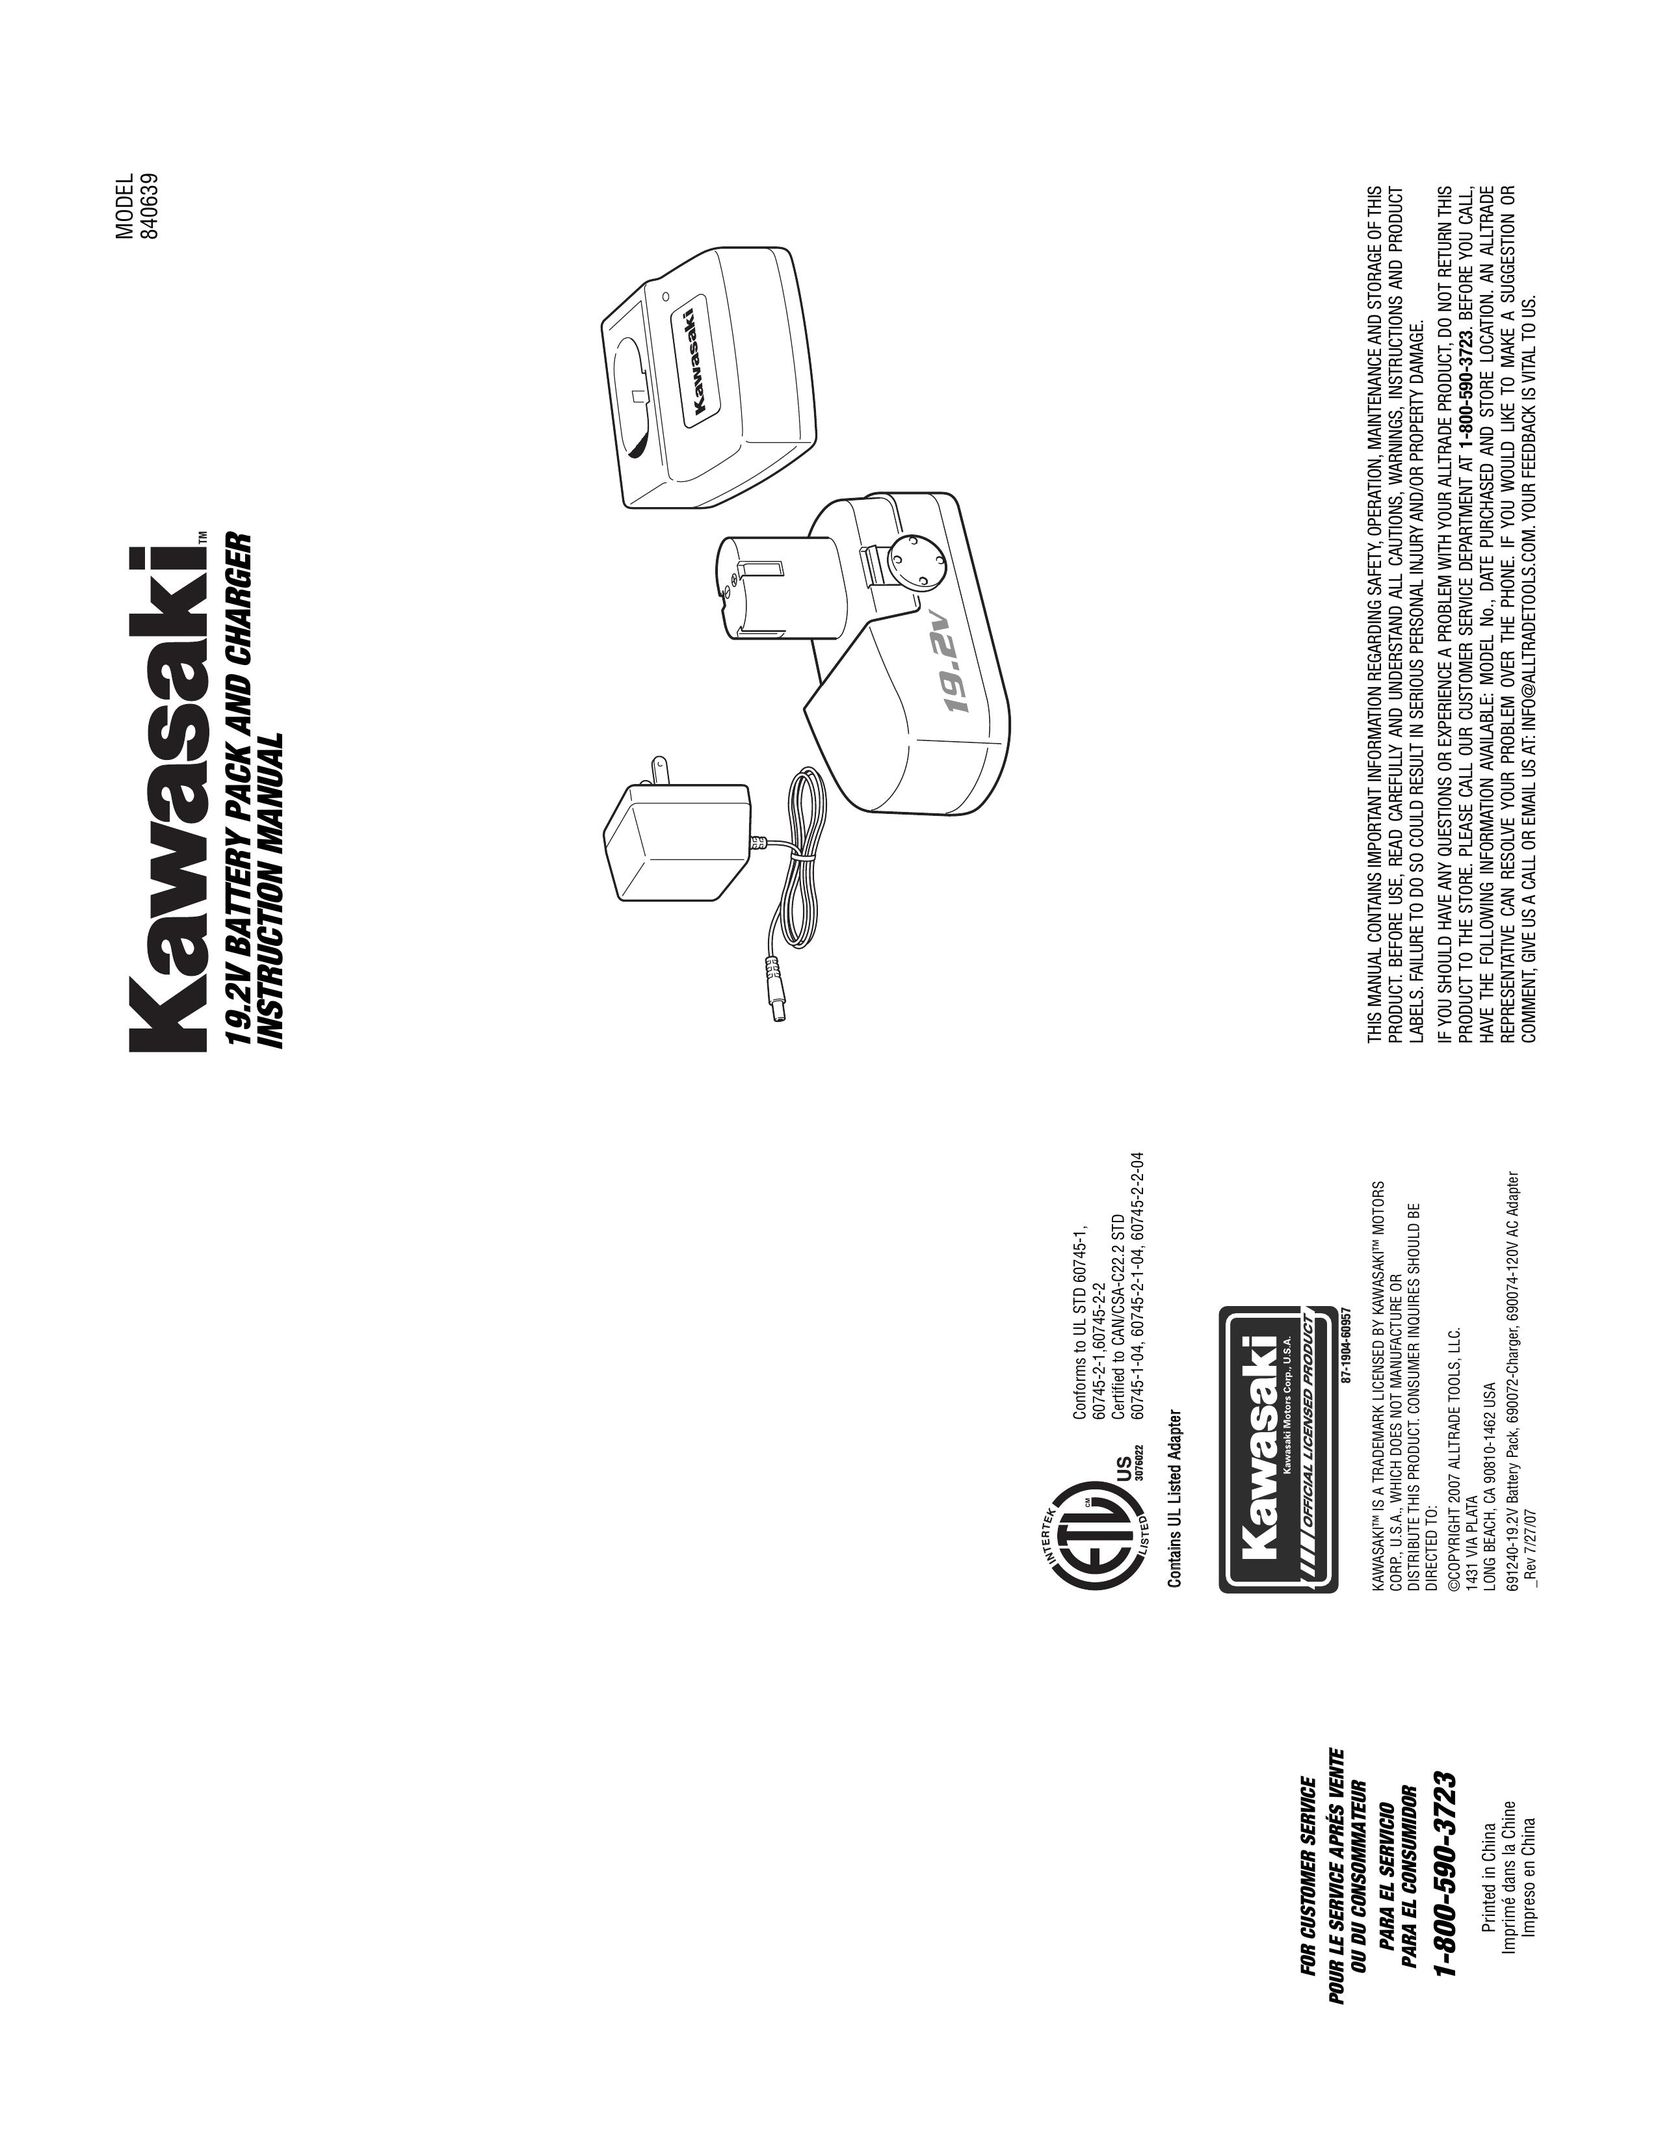 Kawasaki 840639 Battery Charger User Manual